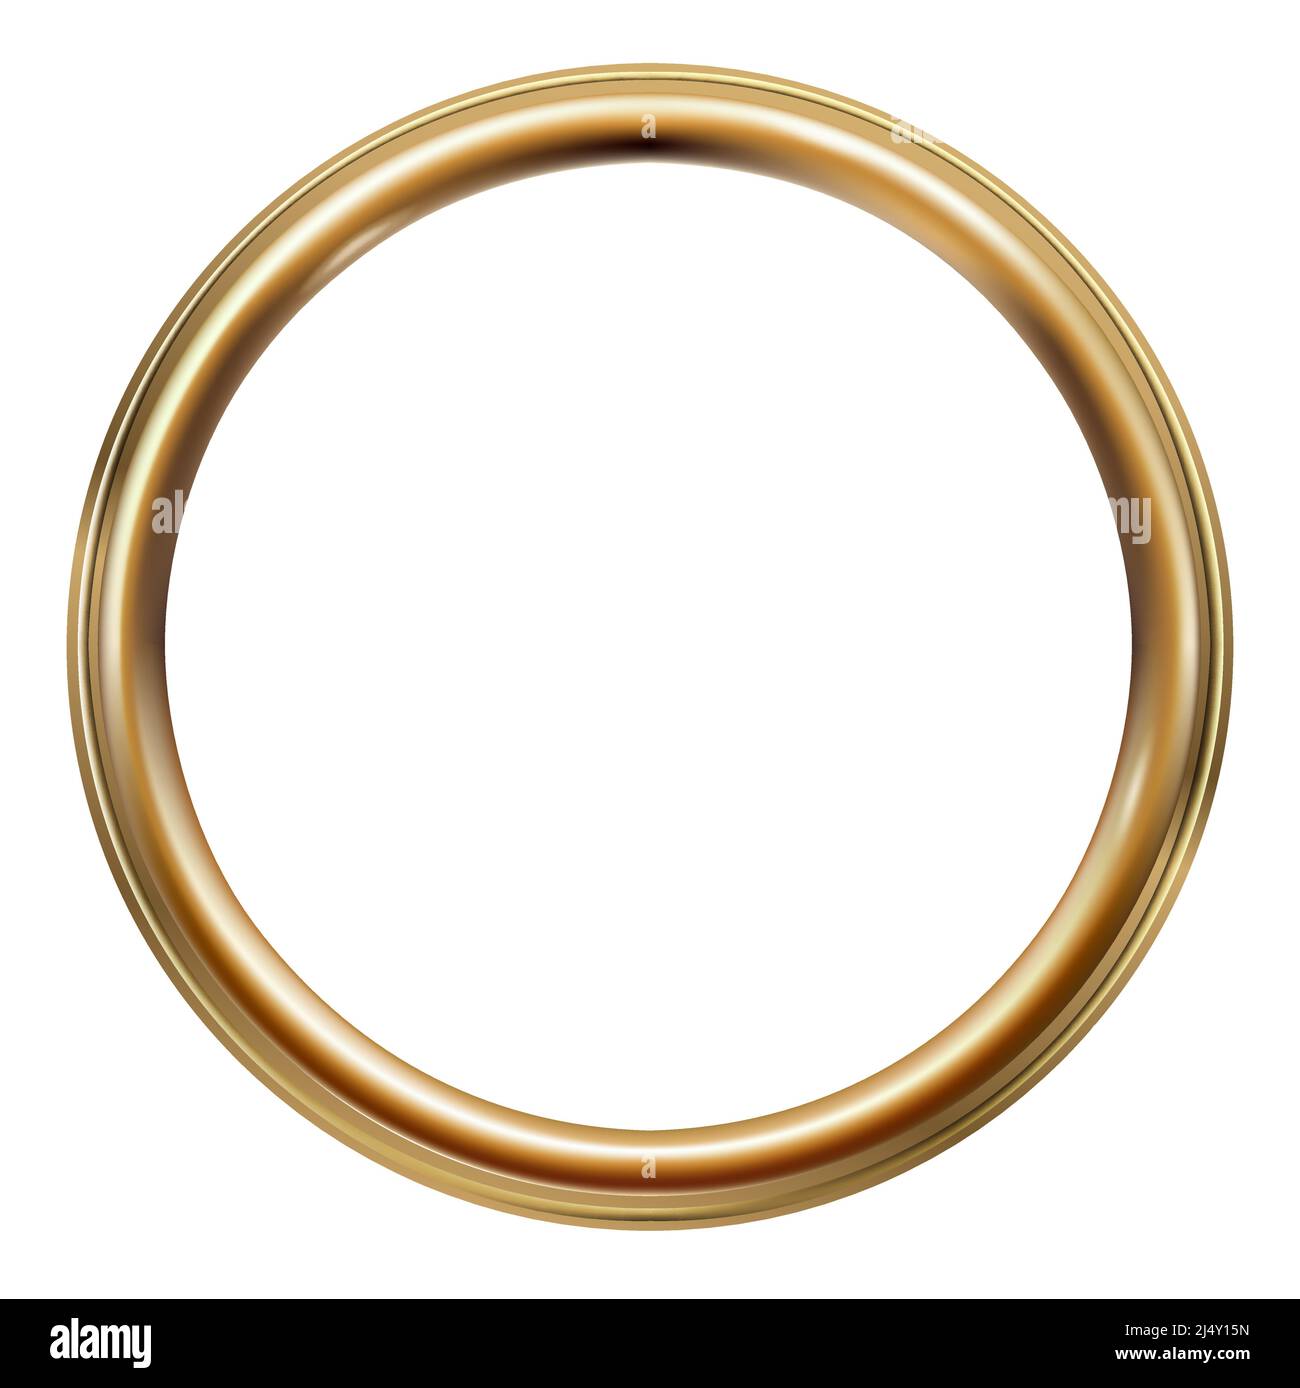 Cornice rotonda classica d'epoca dorata ovale Immagine e Vettoriale - Alamy